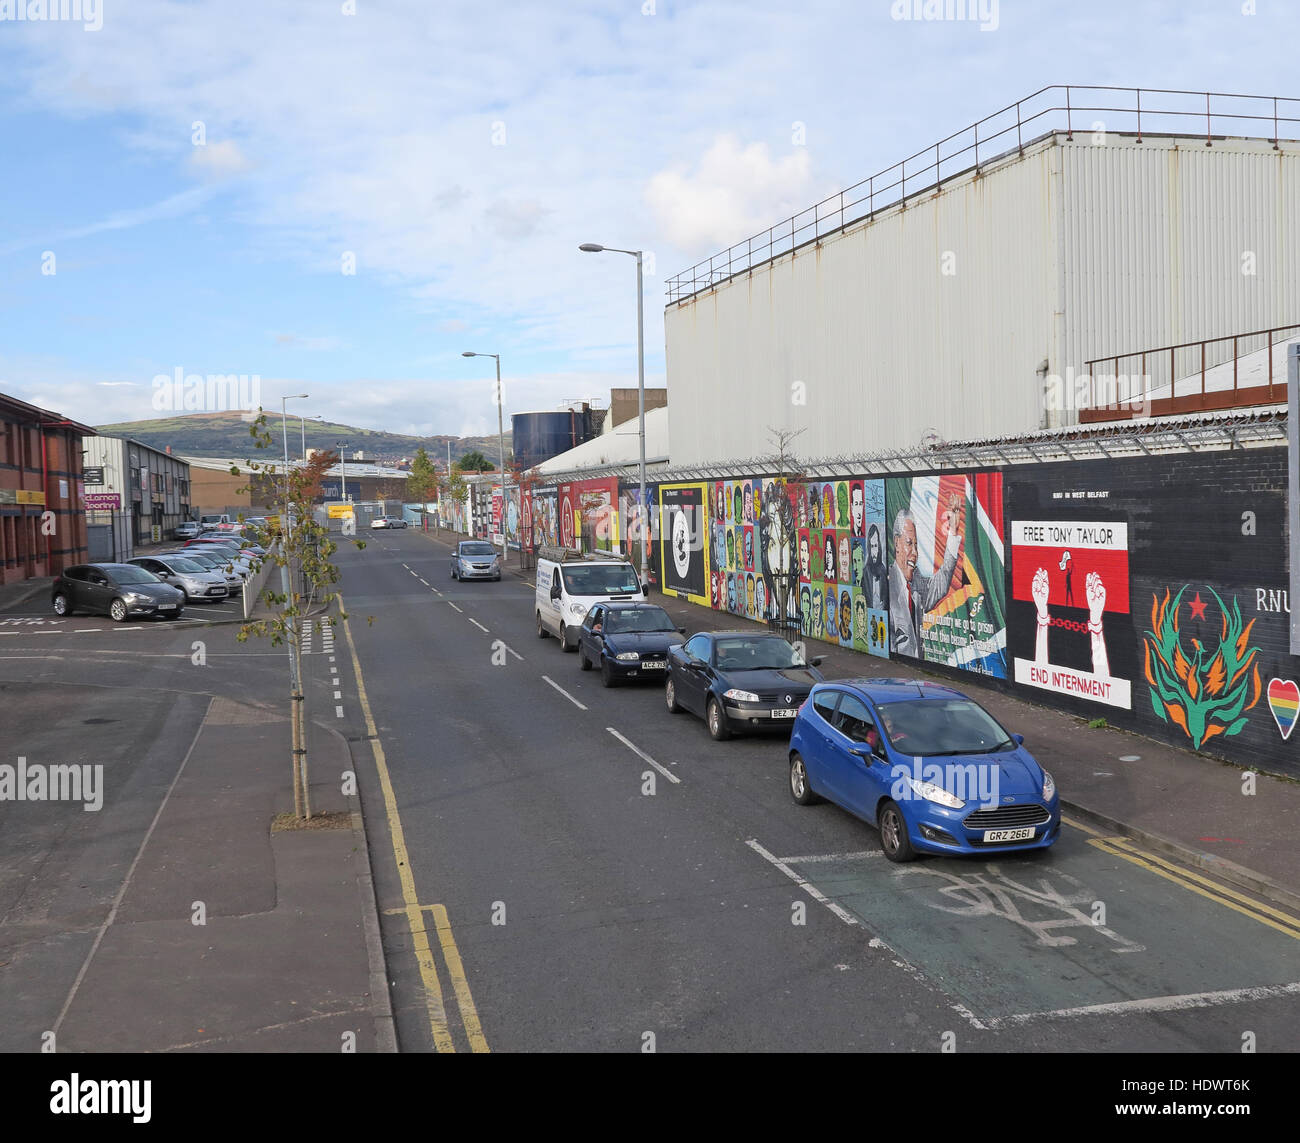 Mur de la paix internationale, au large de Shankill Road/Cupar Way, l'Ouest de Belfast, Irlande du Nord, Royaume-Uni Banque D'Images